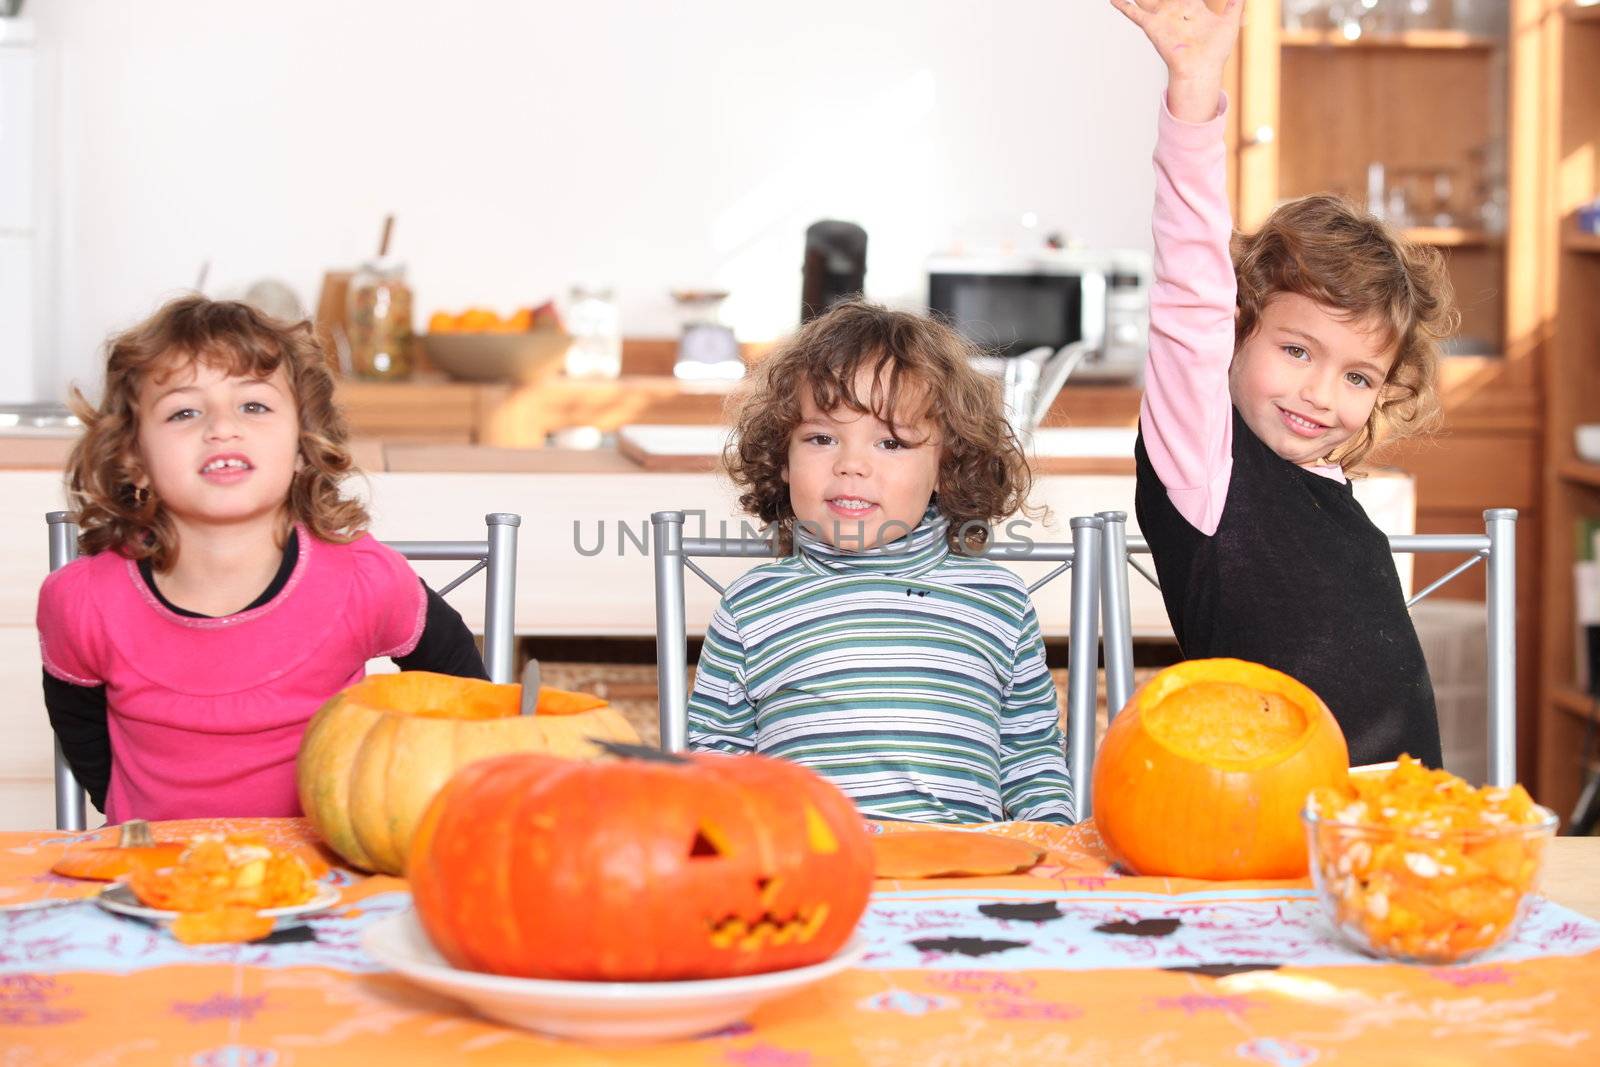 Kids preparing pumpkins for Halloween by phovoir